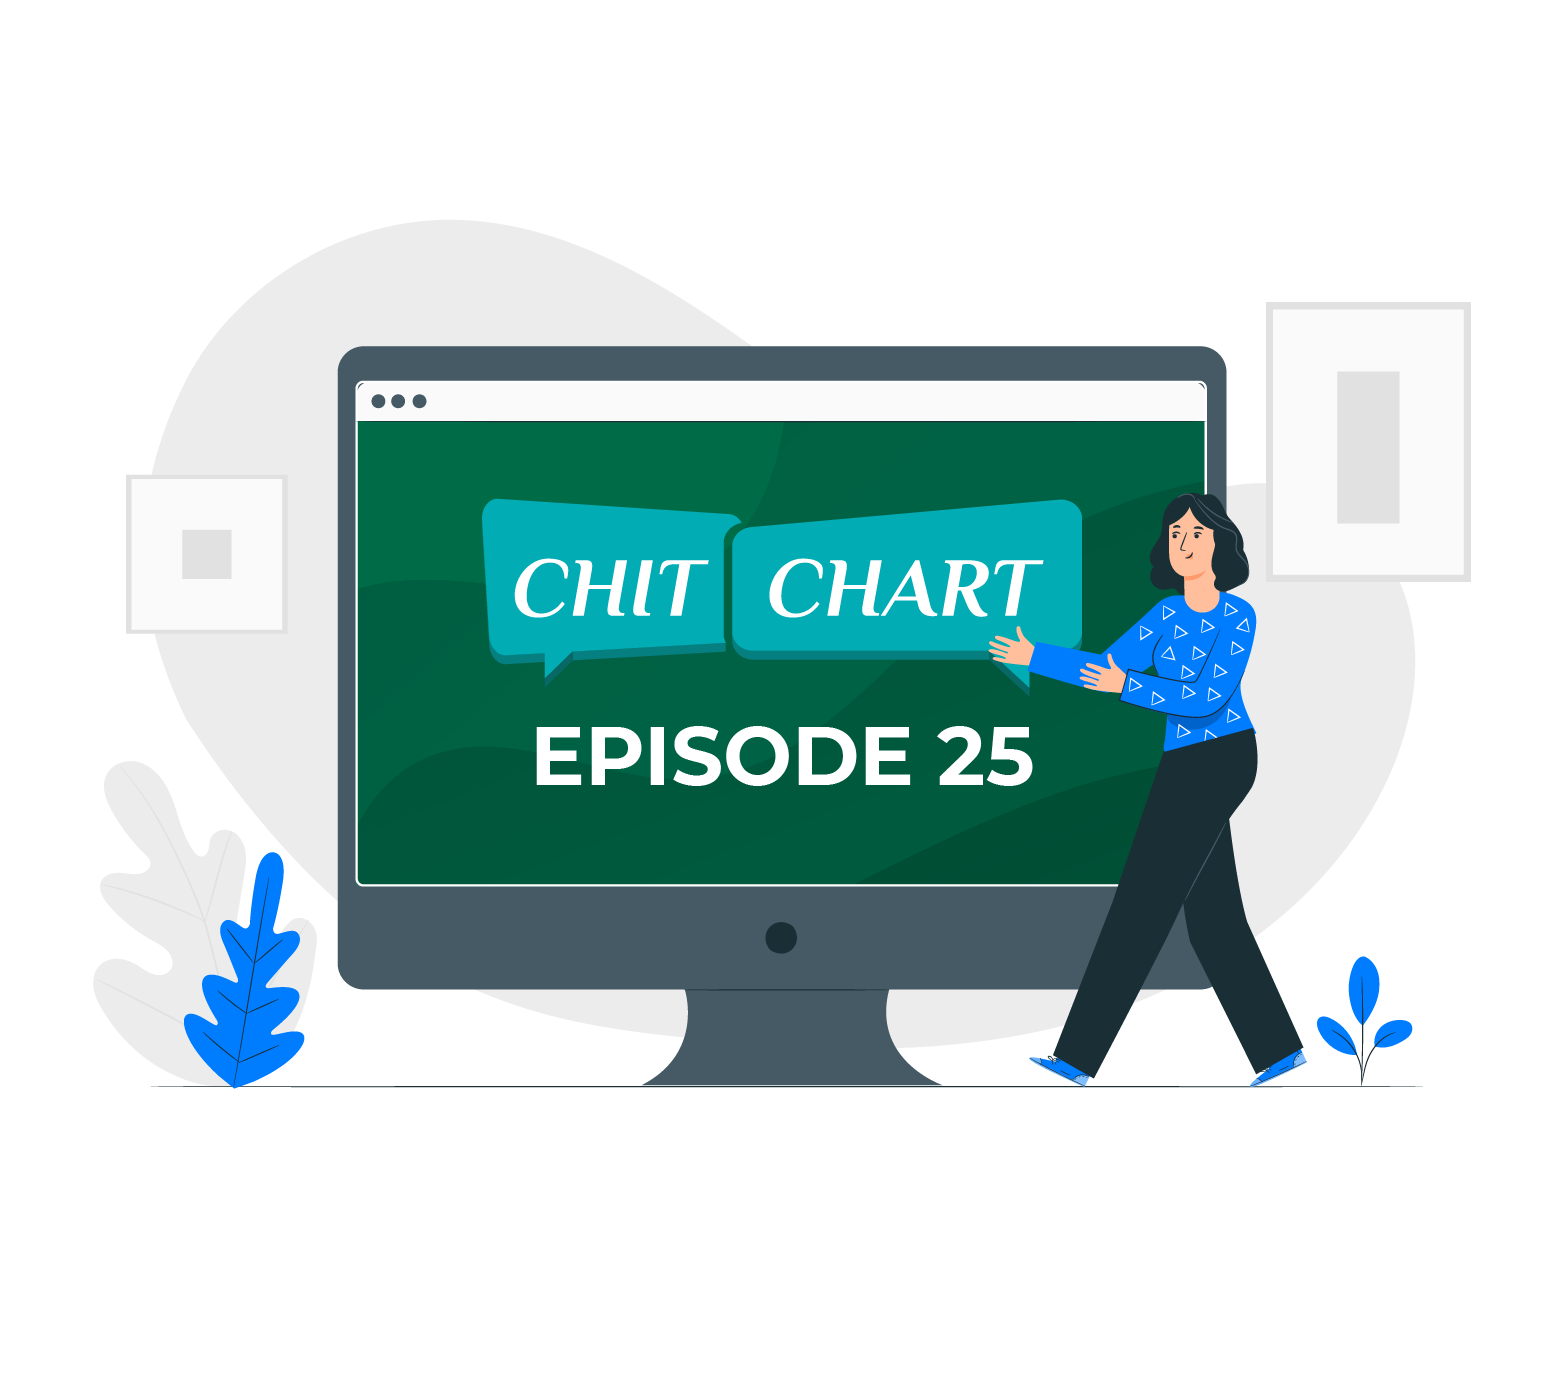 ChitChaRt : Episode 25